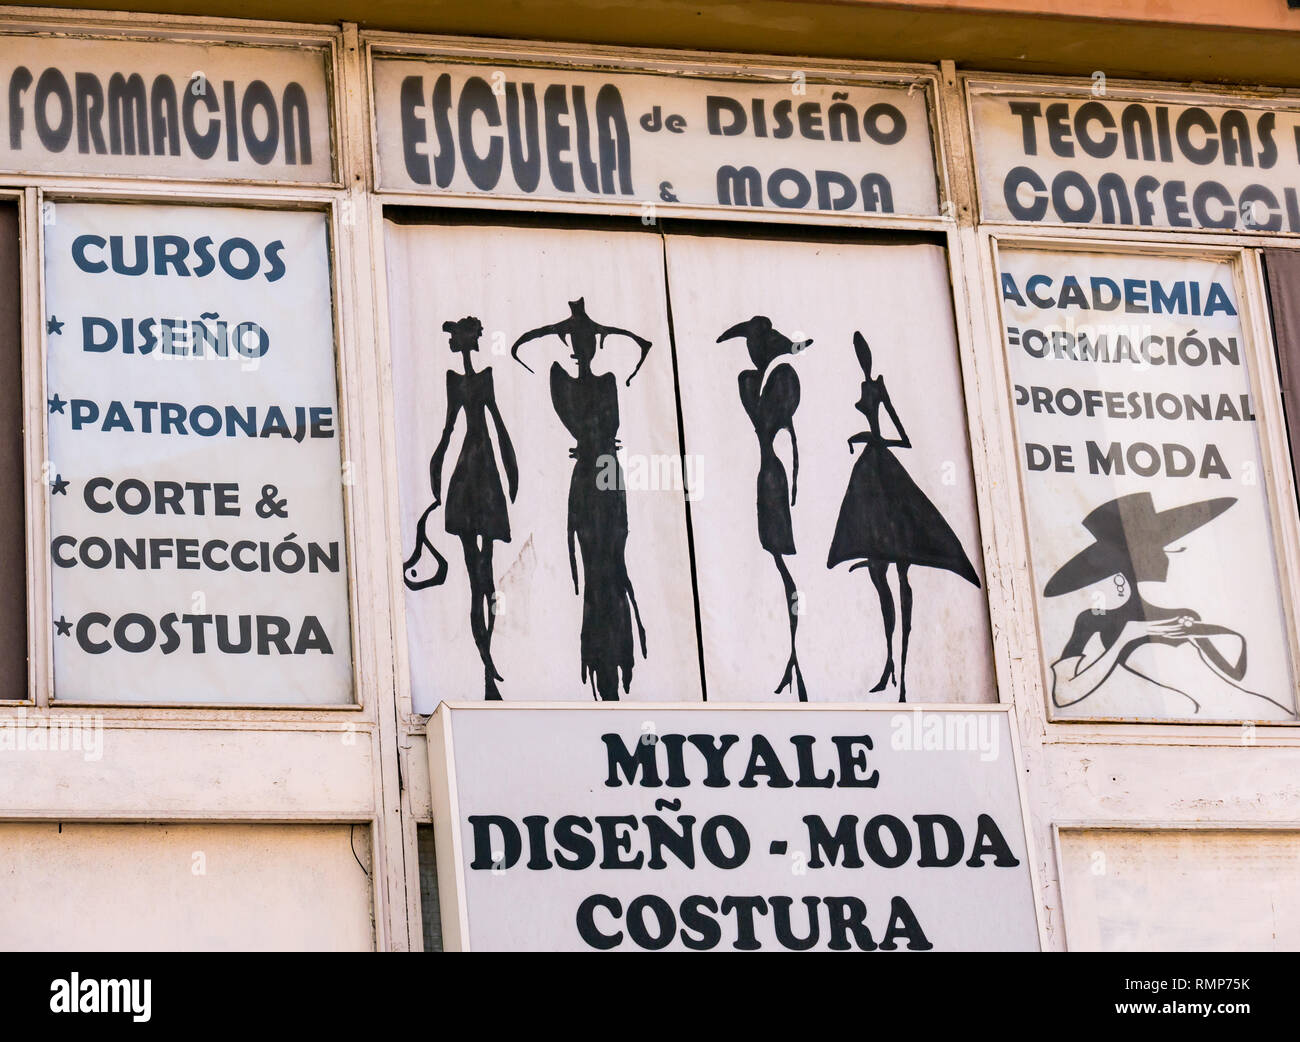 Old fashioned 1950s style female figure fashion drawings on shopfront, Malaga, Andalusia, Spain Stock Photo